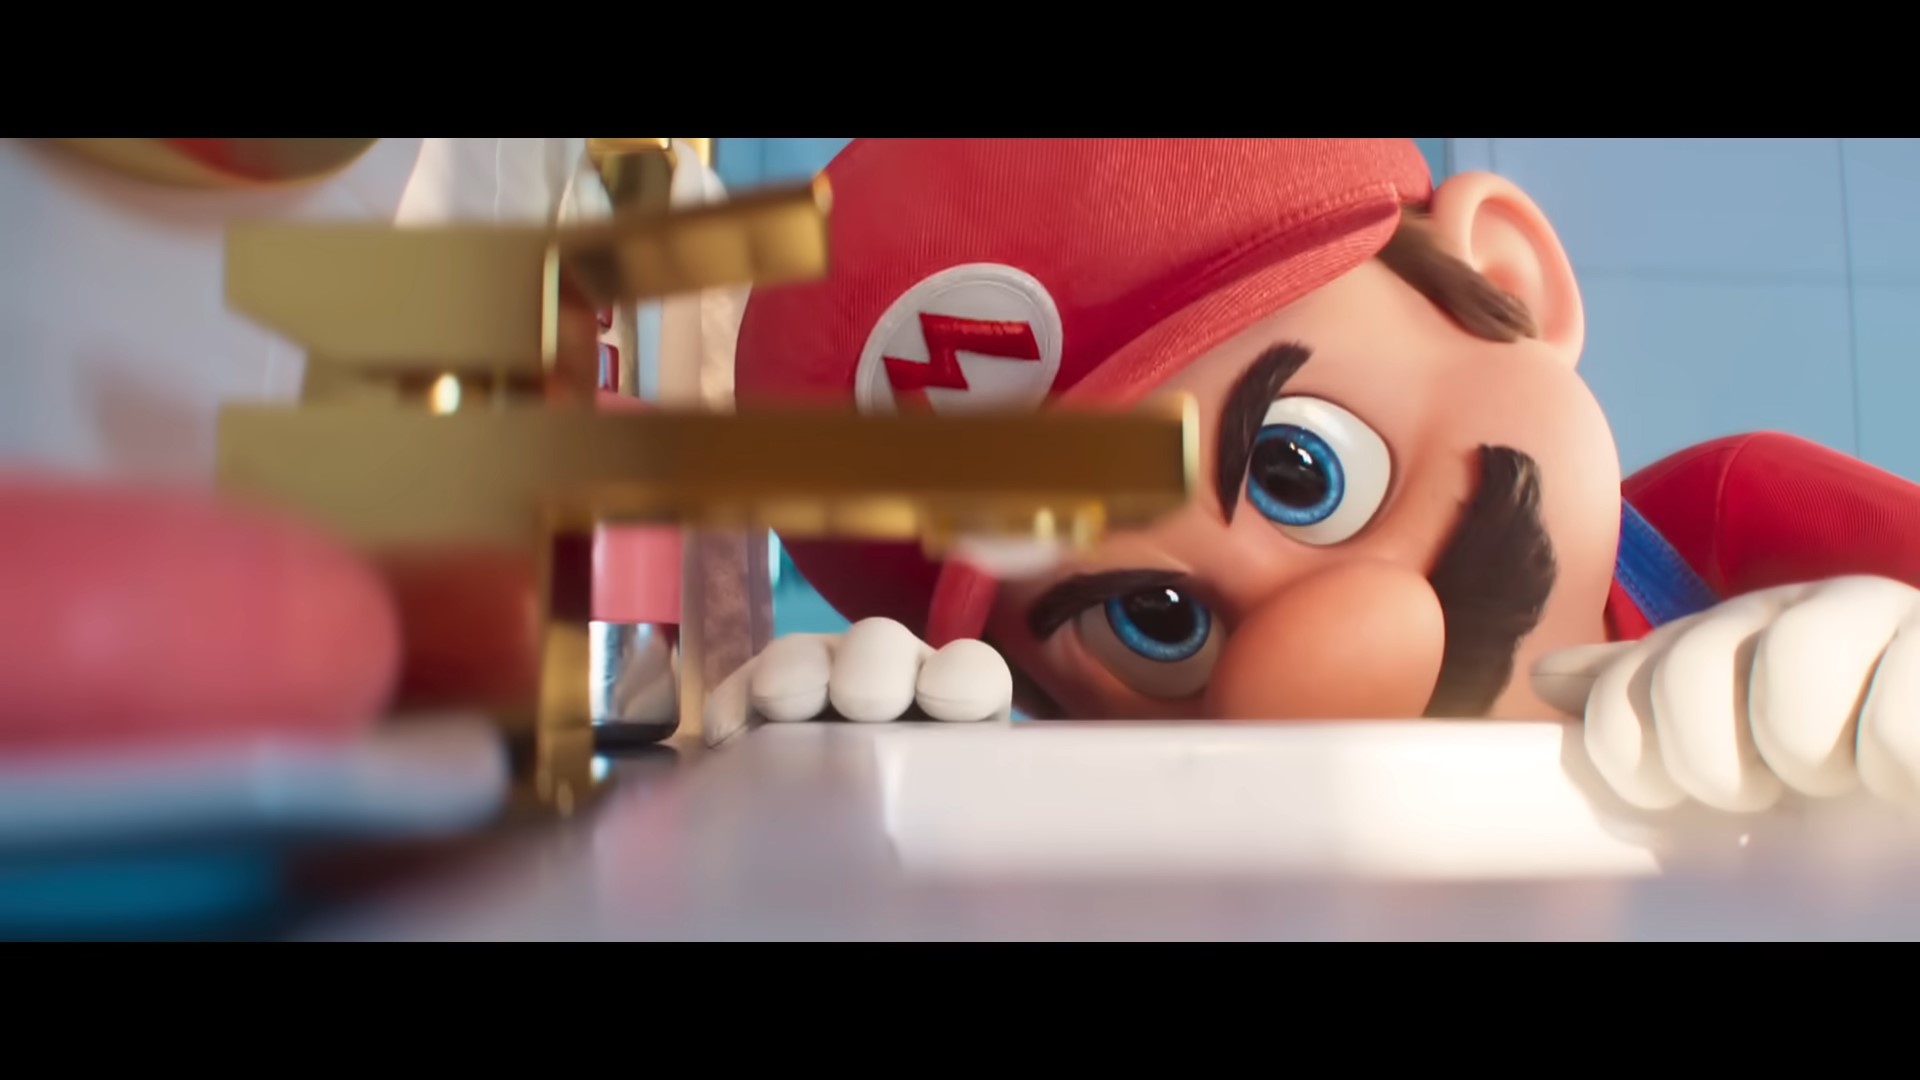 Super Mario Bros. O Filme é uma perfeita adaptação de um game (Crítica sem  Spoiler) - Resenha Game Club